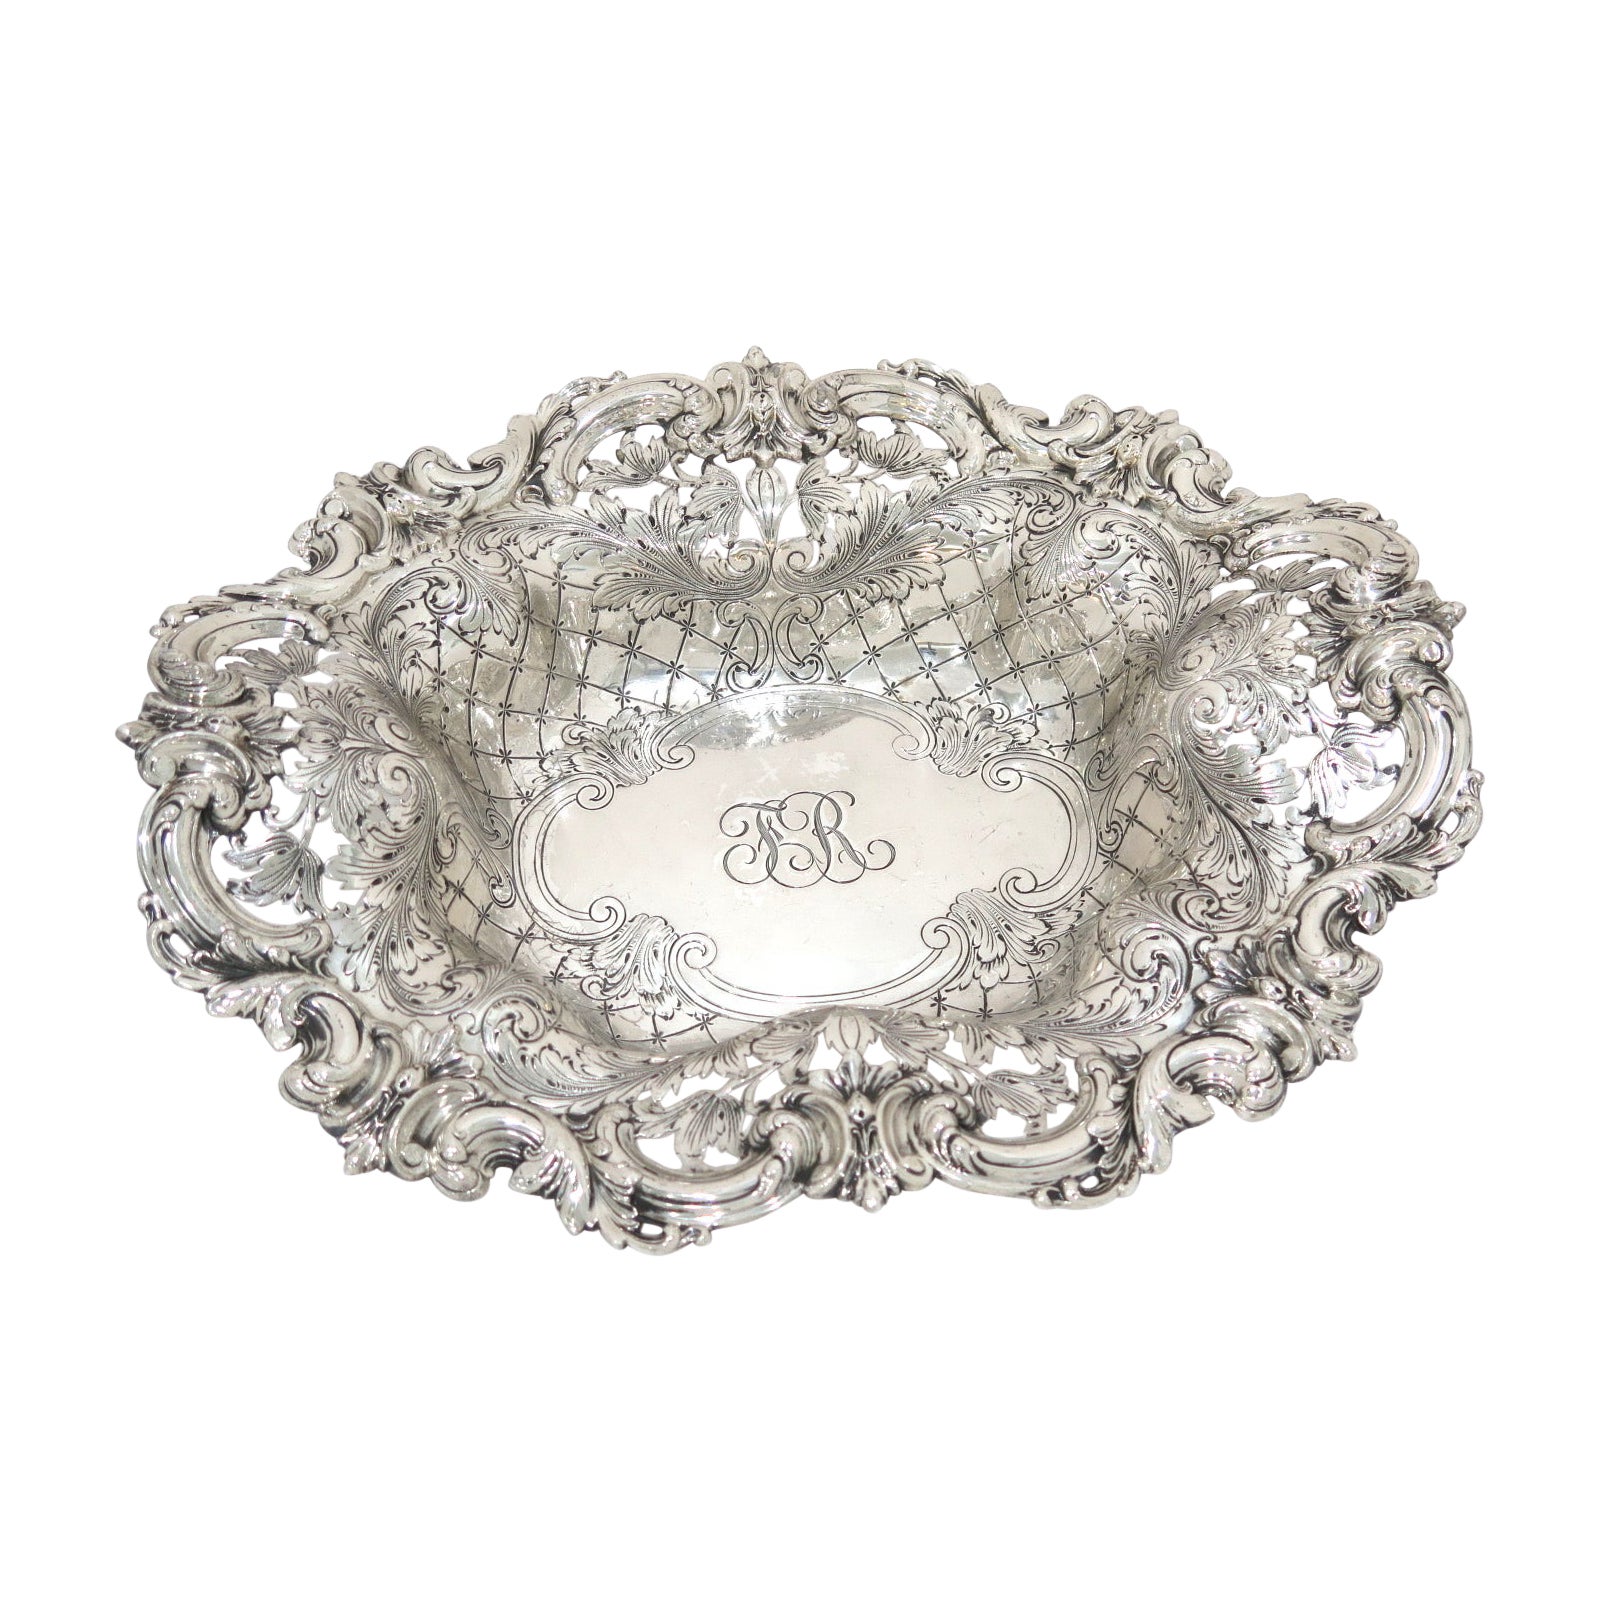 13" Sterling Silver Hennegen, Bates Co. Antique Floral Scroll Oval Serving Bowl